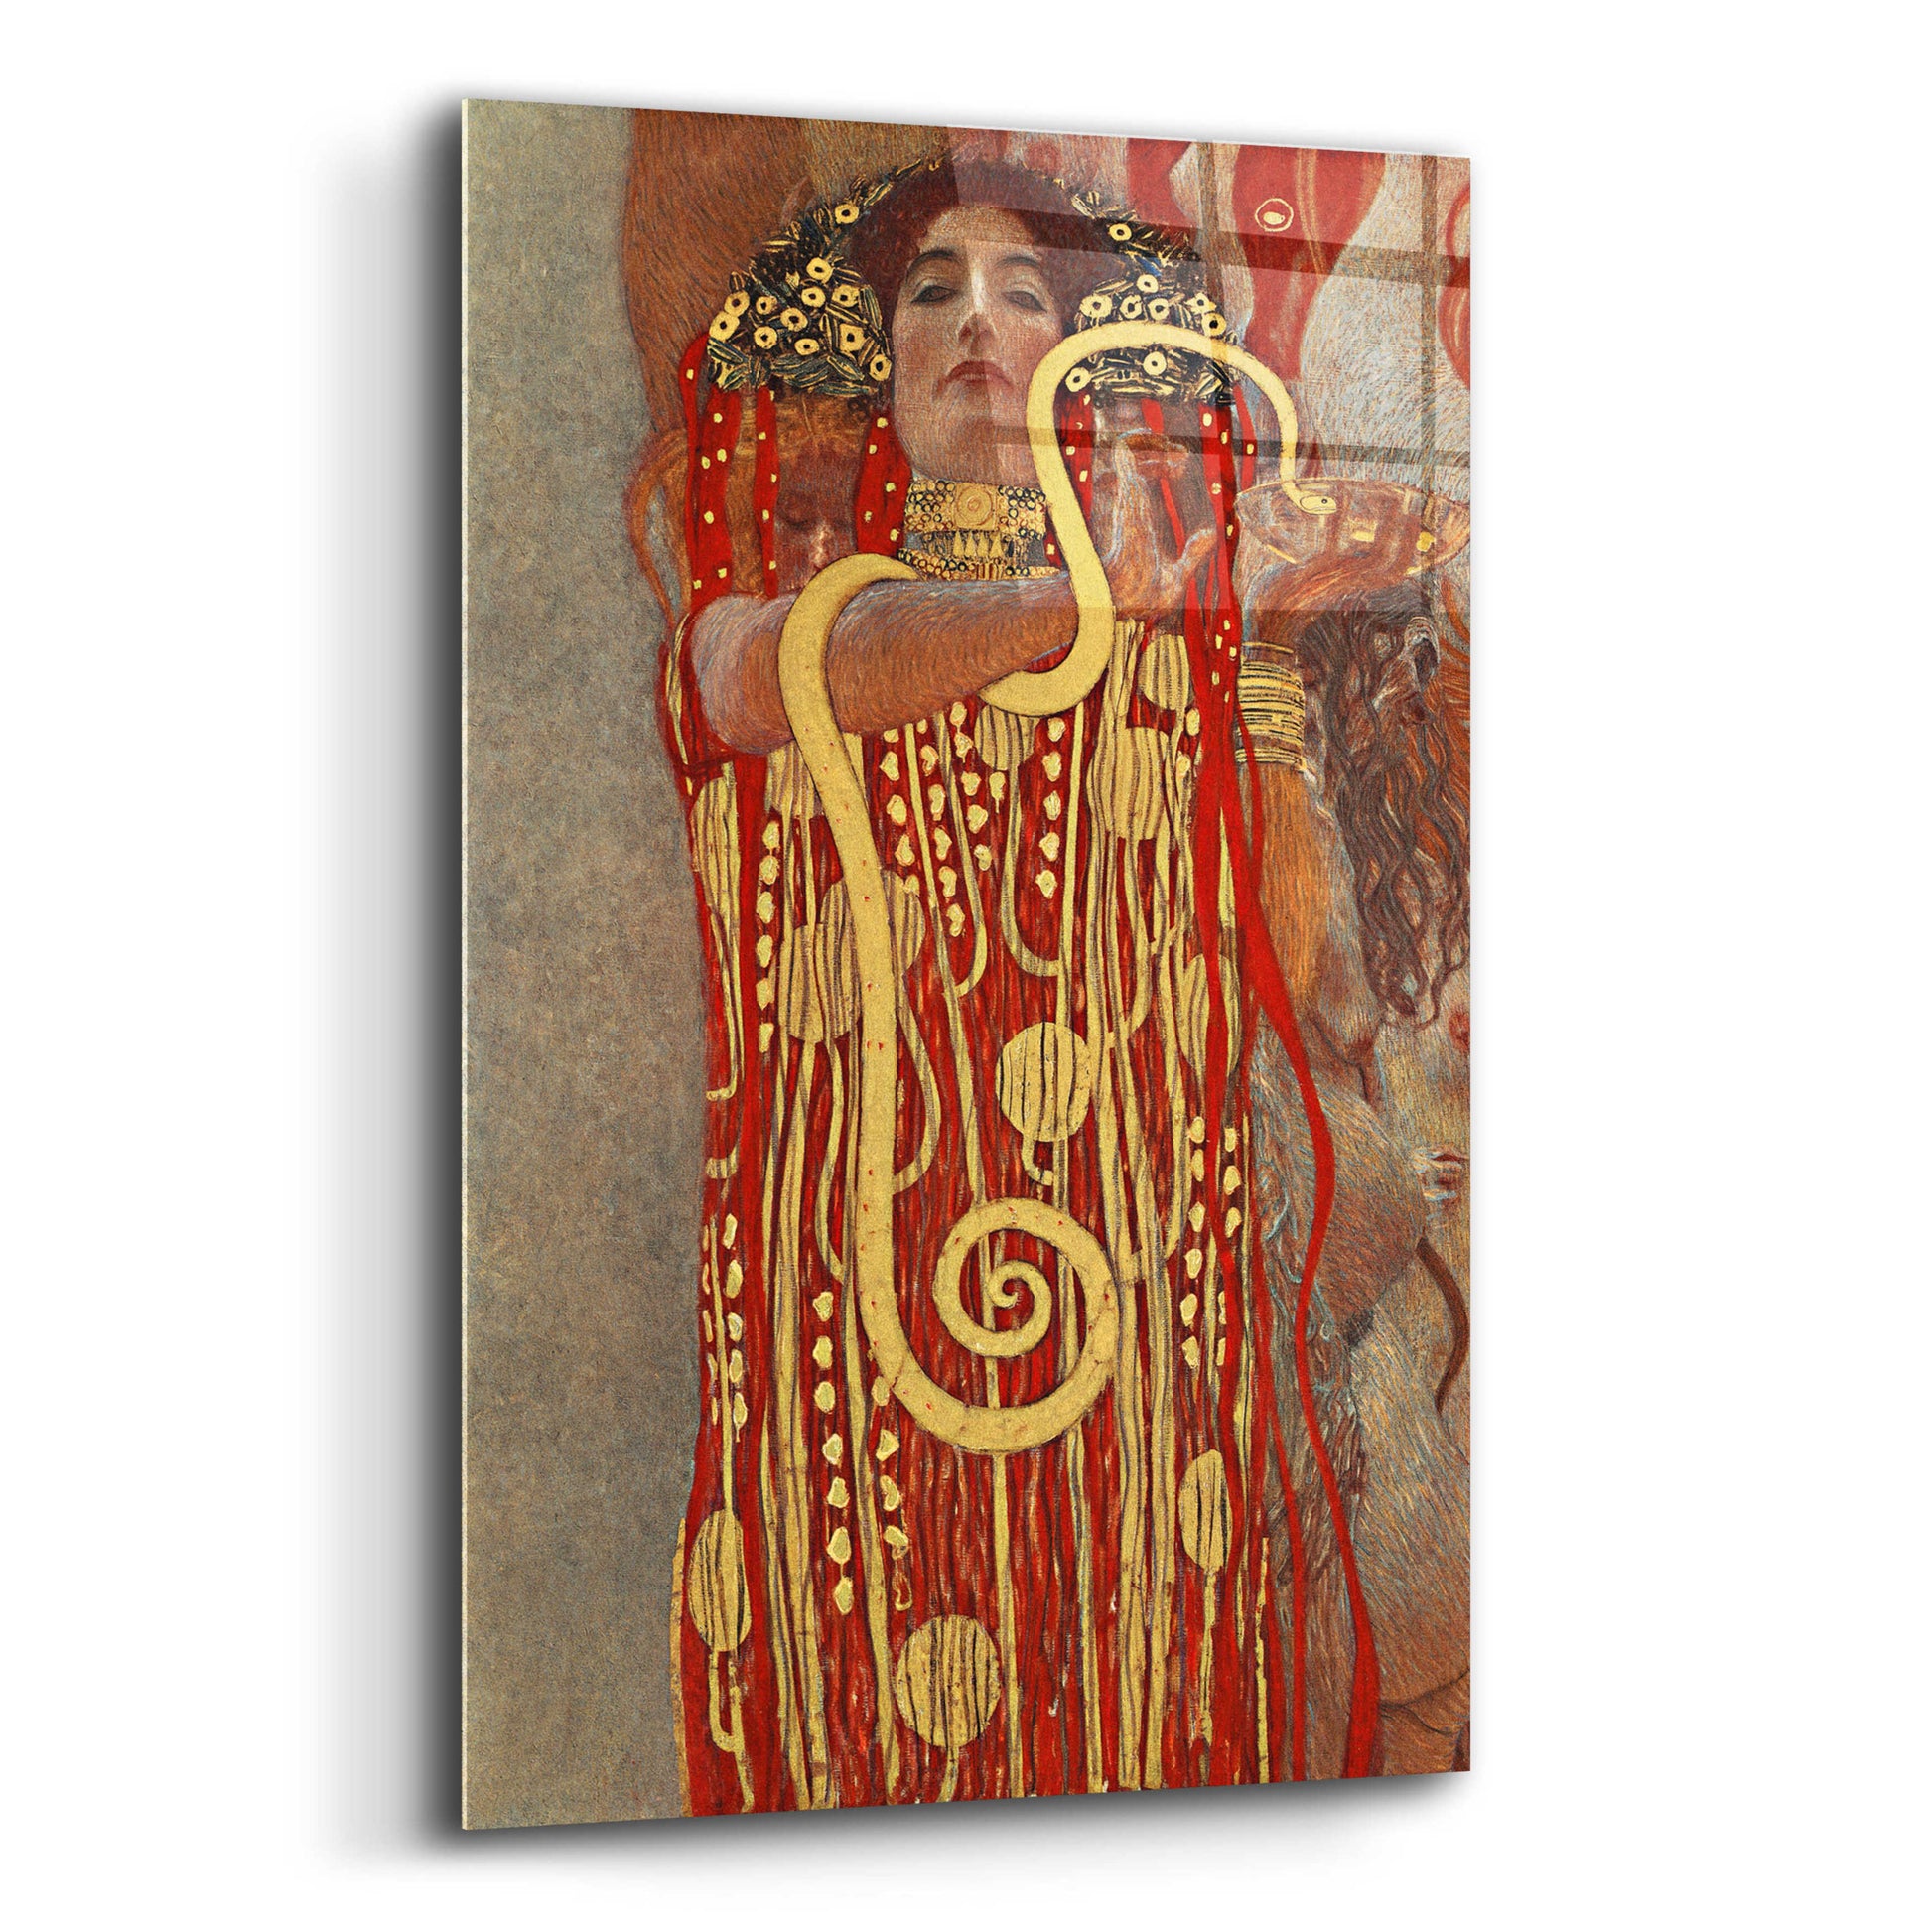 Epic Art 'Hygieia' by Gustav Klimt, Acrylic Glass Wall Art,16x24